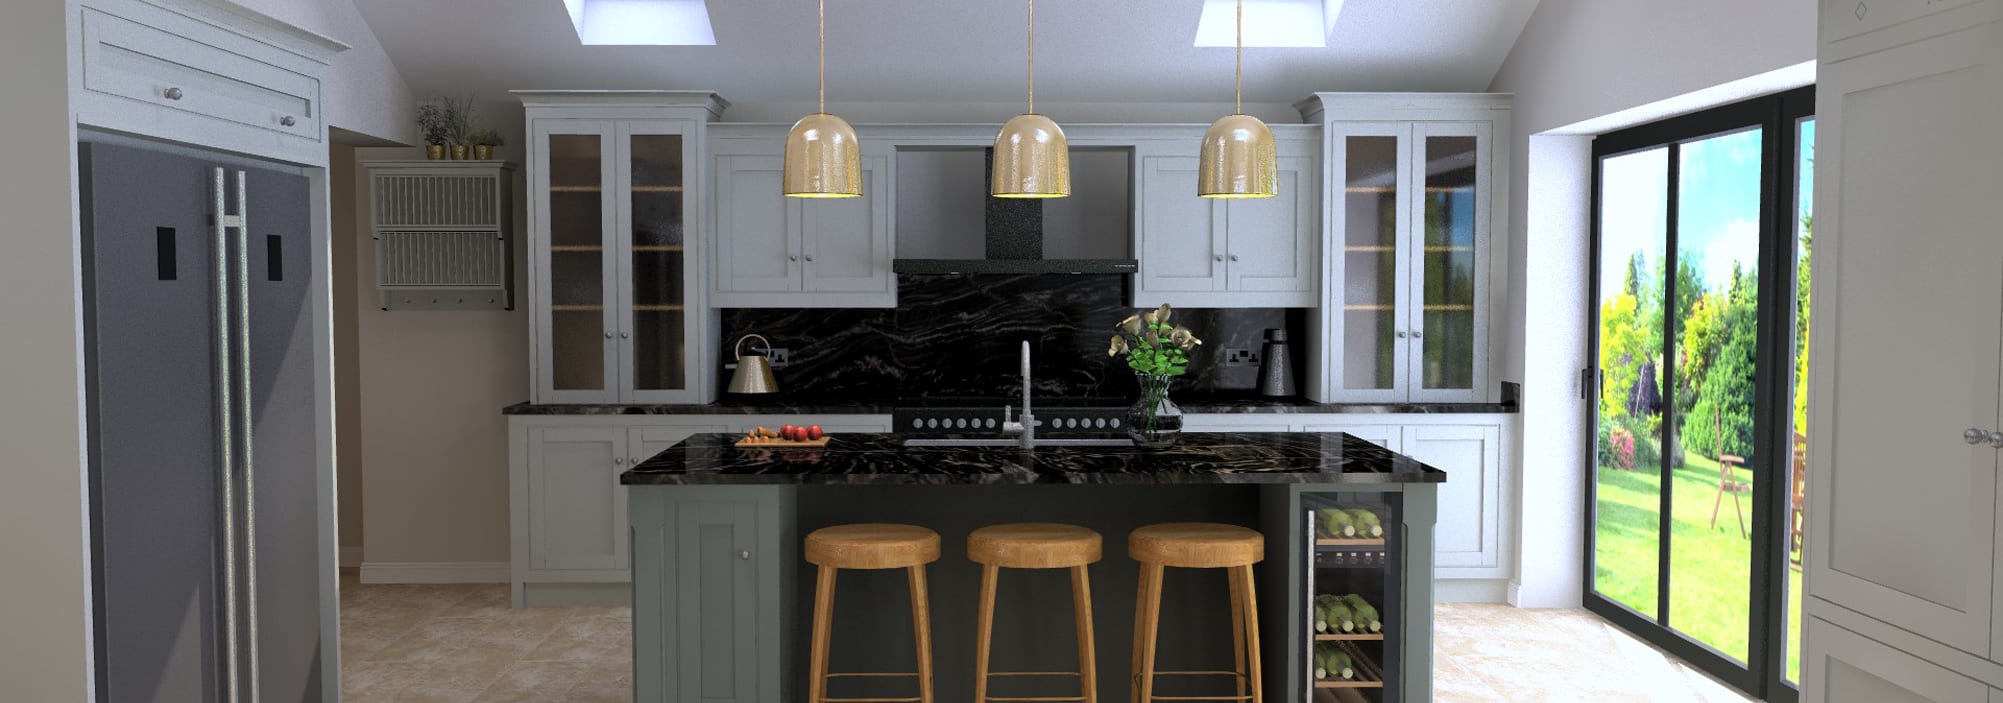 dark color modern kitchen